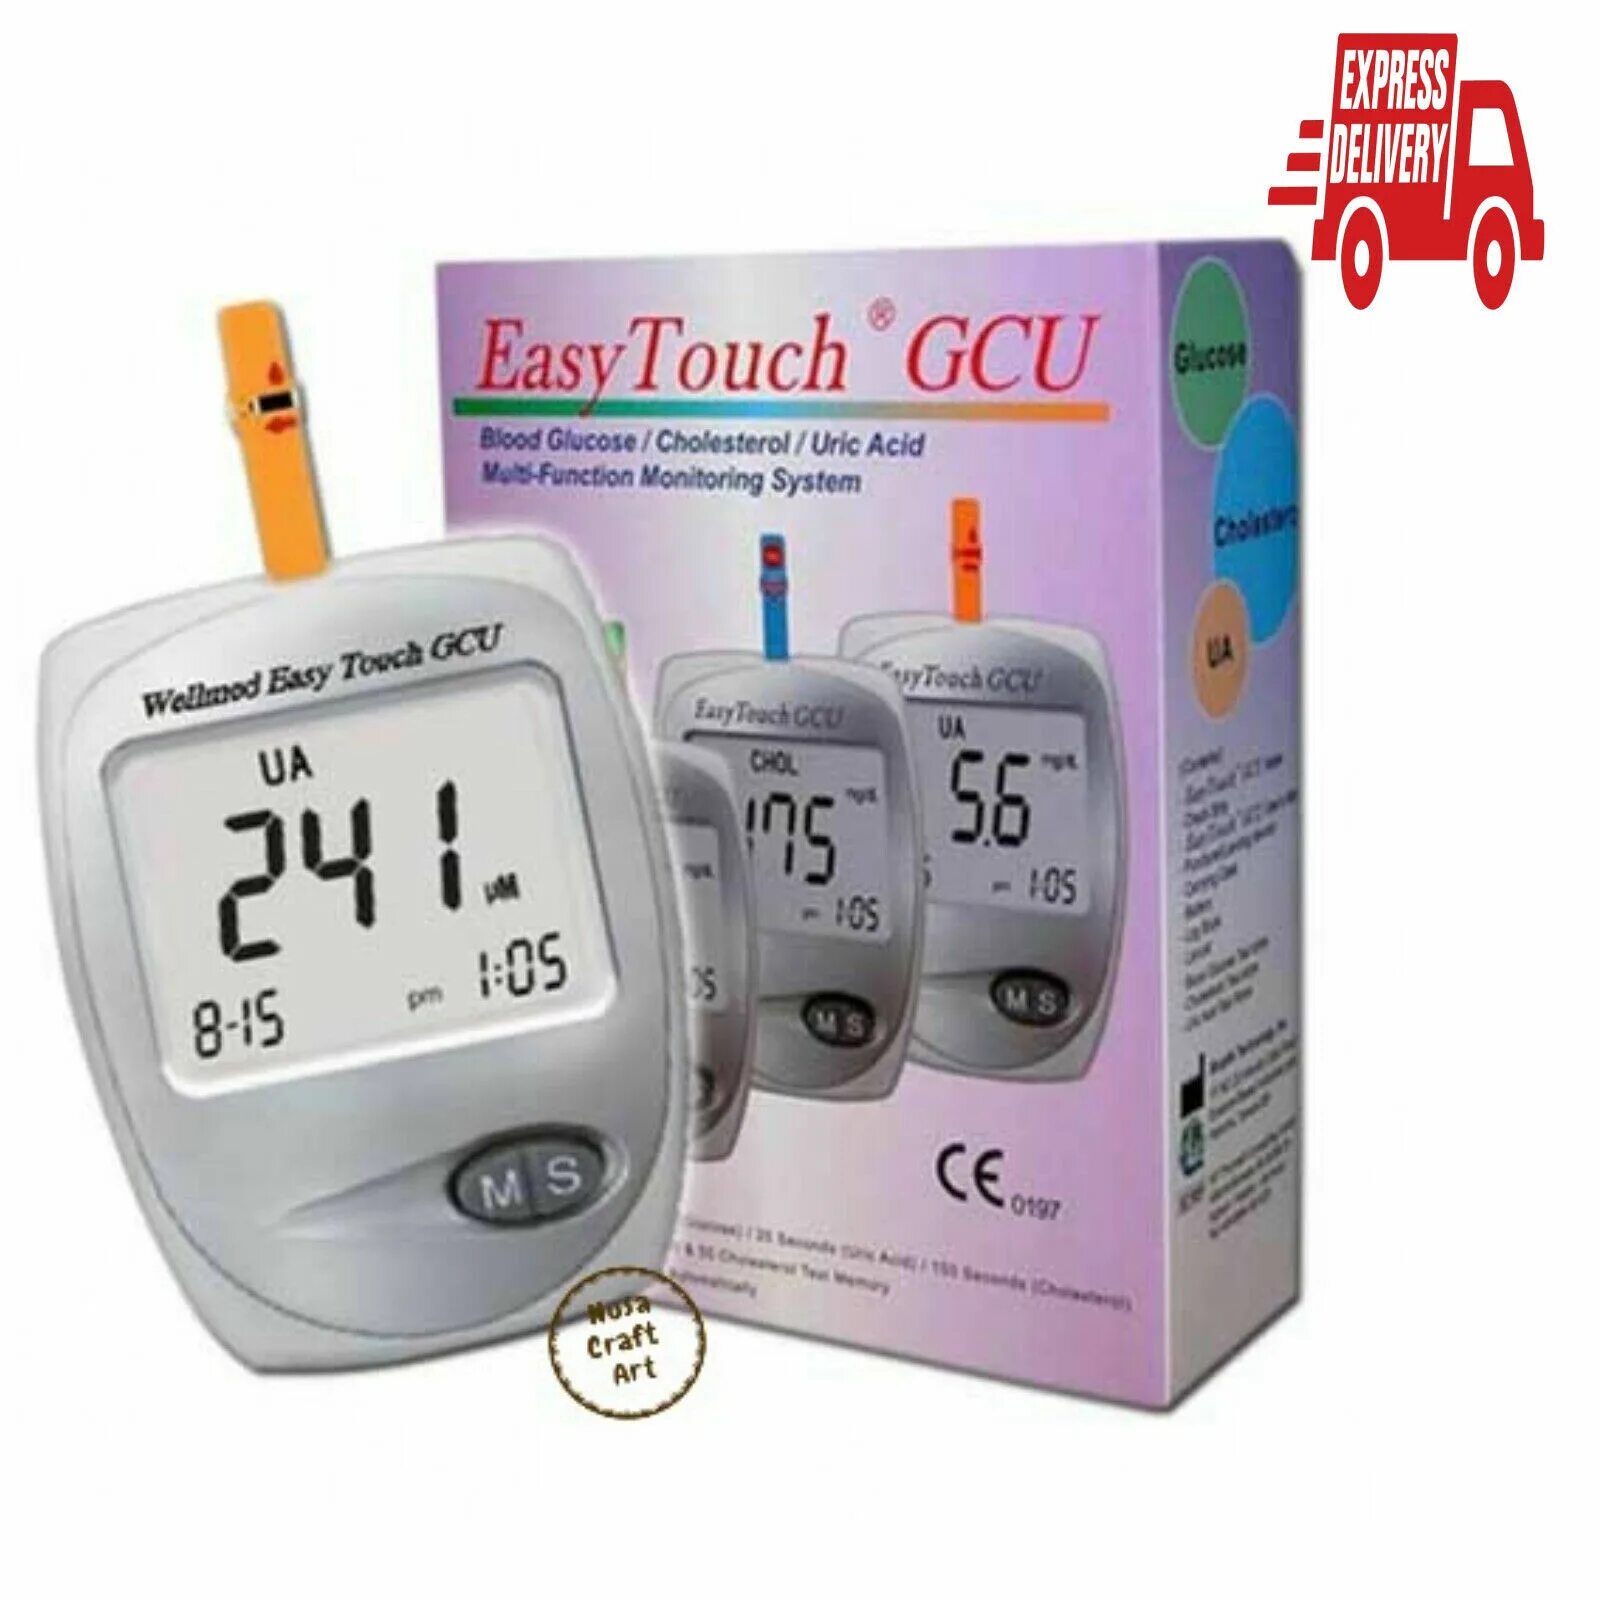 Аппарат для измерения холестерина в домашних. Анализатор крови EASYTOUCH GCU. Анализатор крови easy Touch Глюкоза холестерин. Глюкометр EASYTOUCH G коробка. Прибор для измерения холестерина ИЗИ тач GCHB.